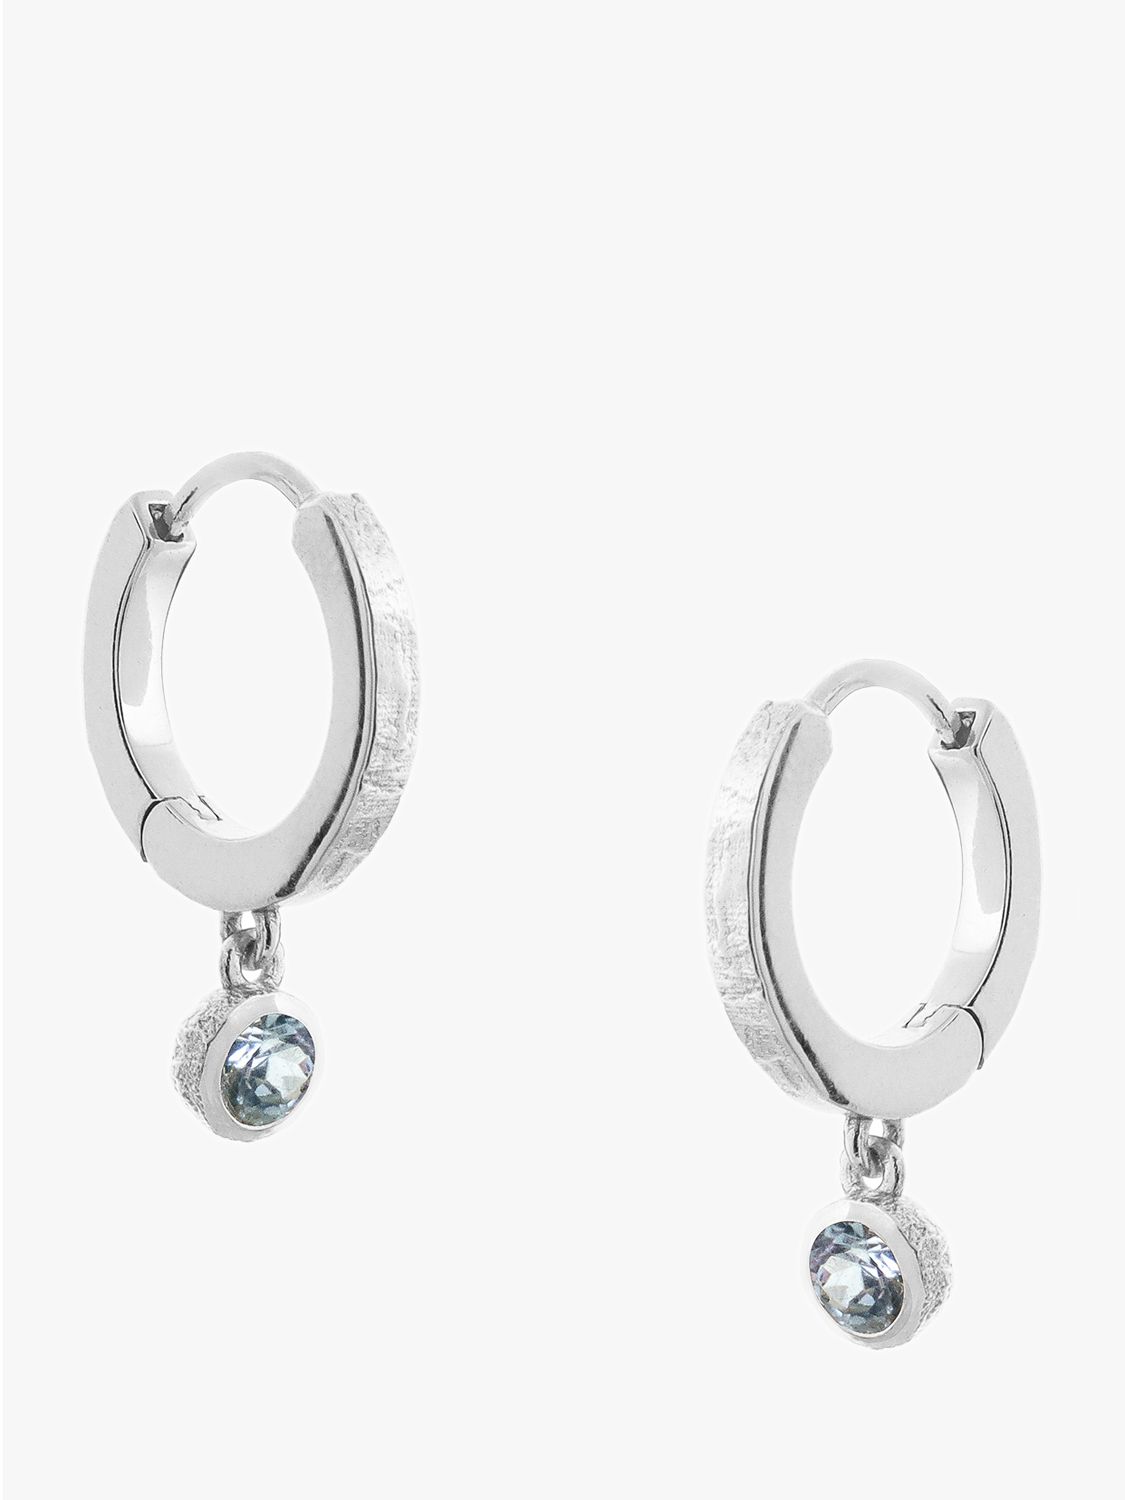 Tutti & Co December Birthstone Earrings, Blue Topaz/Silver